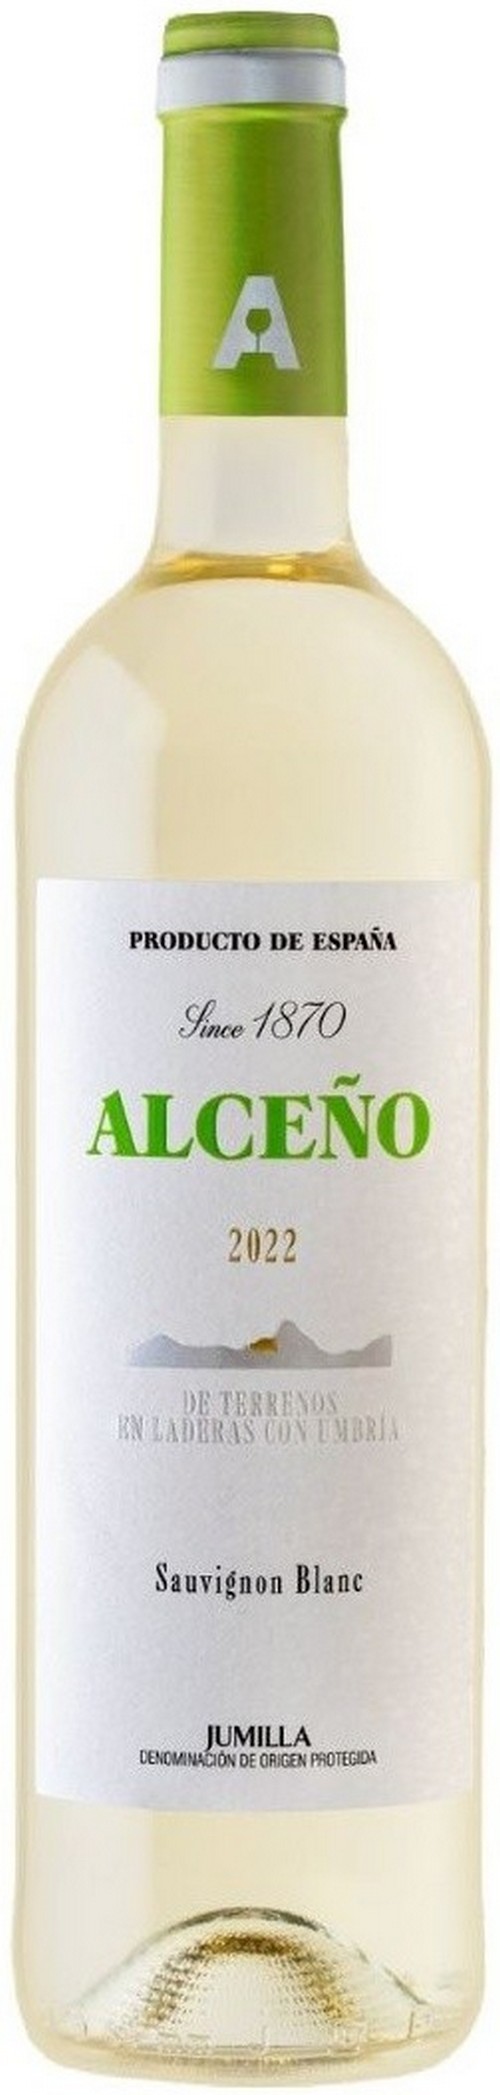 alceno-sauvignon-blanc-2022